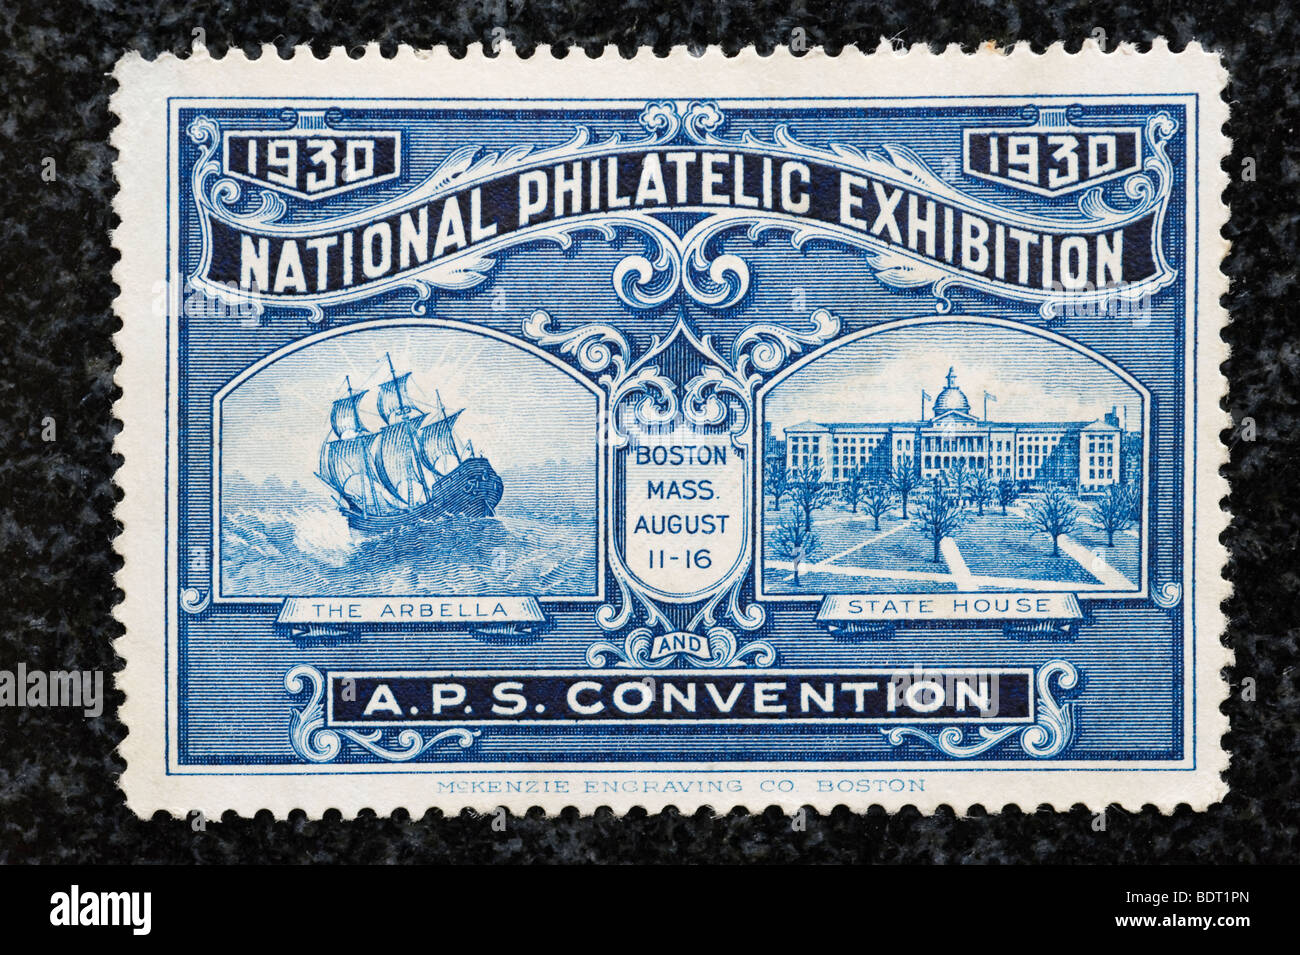 1930 Exposition philatélique nationale stamp Banque D'Images